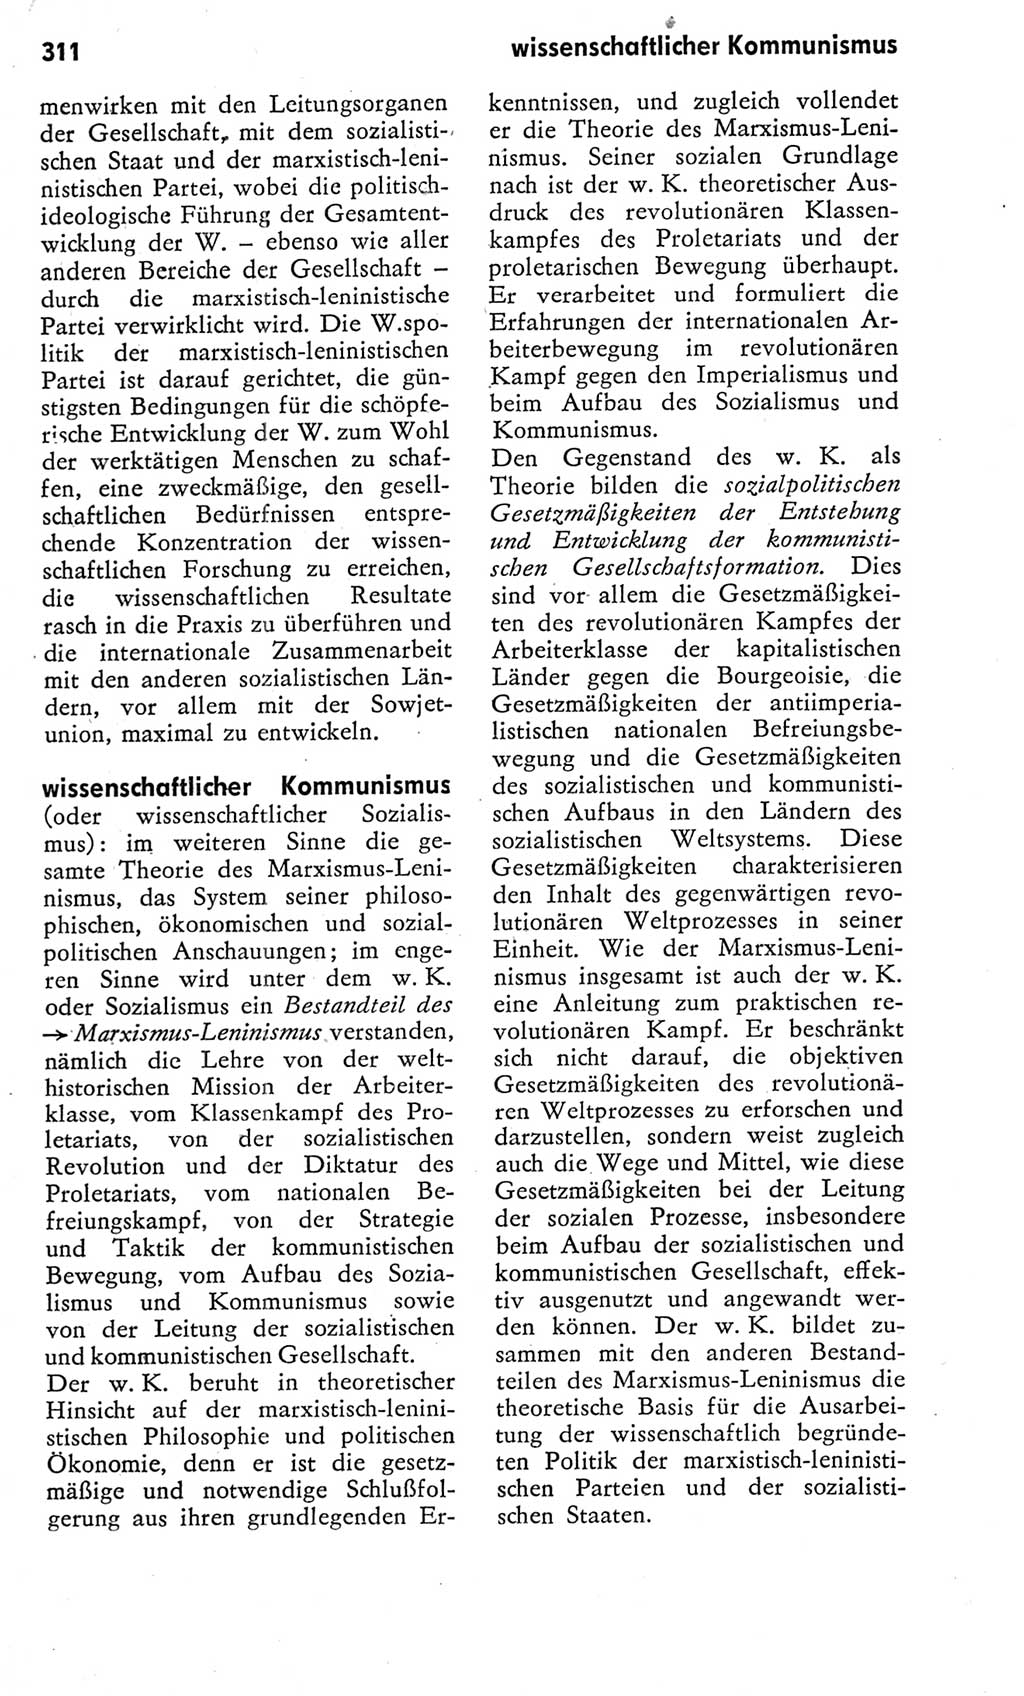 Kleines Wörterbuch der marxistisch-leninistischen Philosophie [Deutsche Demokratische Republik (DDR)] 1975, Seite 311 (Kl. Wb. ML Phil. DDR 1975, S. 311)